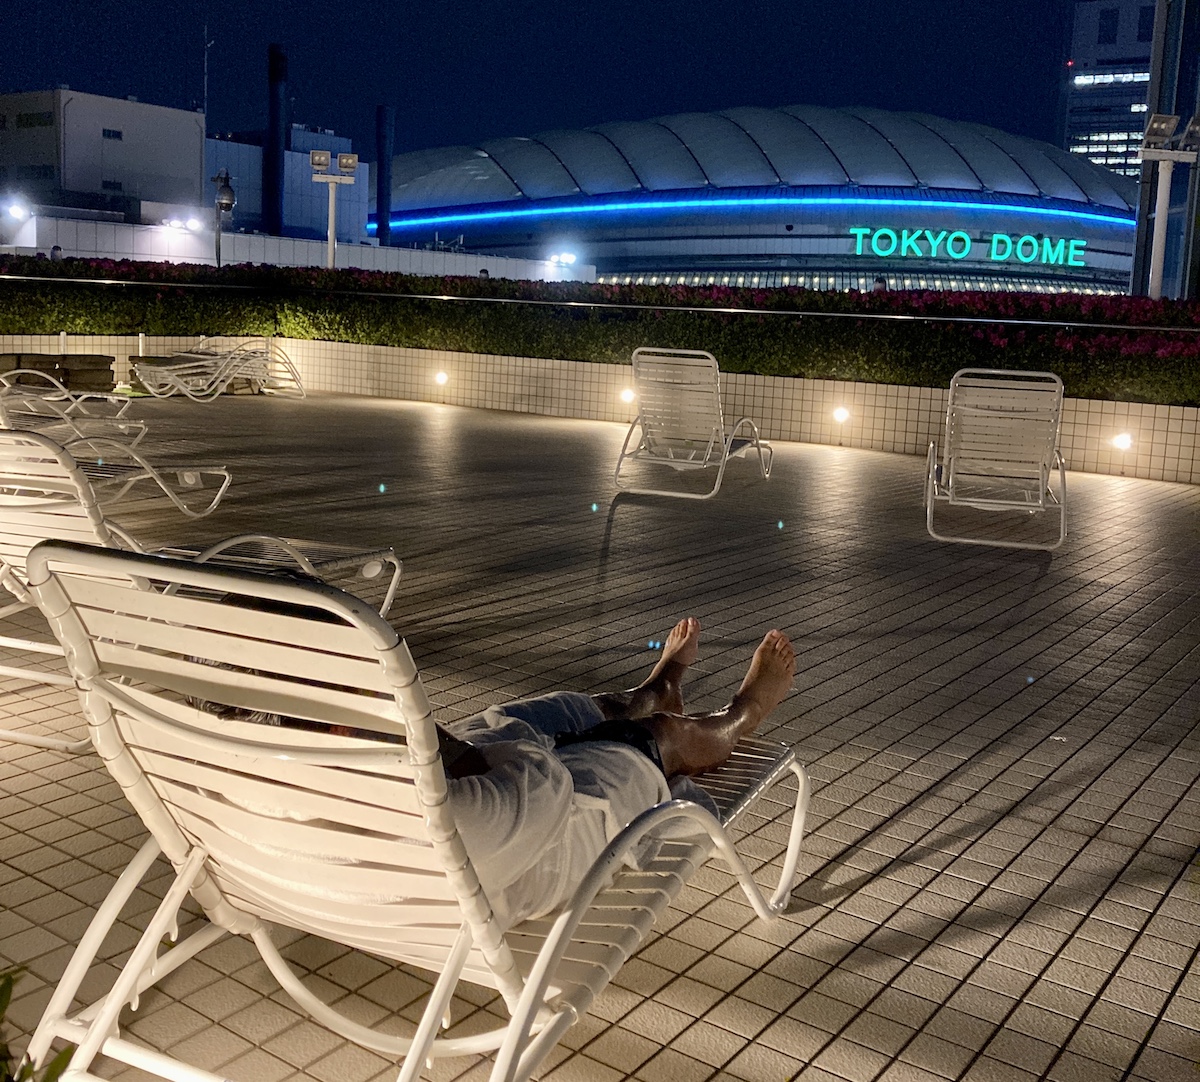 東京ドームホテルにプールサイドサウナ Poona がオープン 水上ハンモックで揺られた後に東京ドームを眺めながら外気浴できるって天国かよ ロケットニュース24